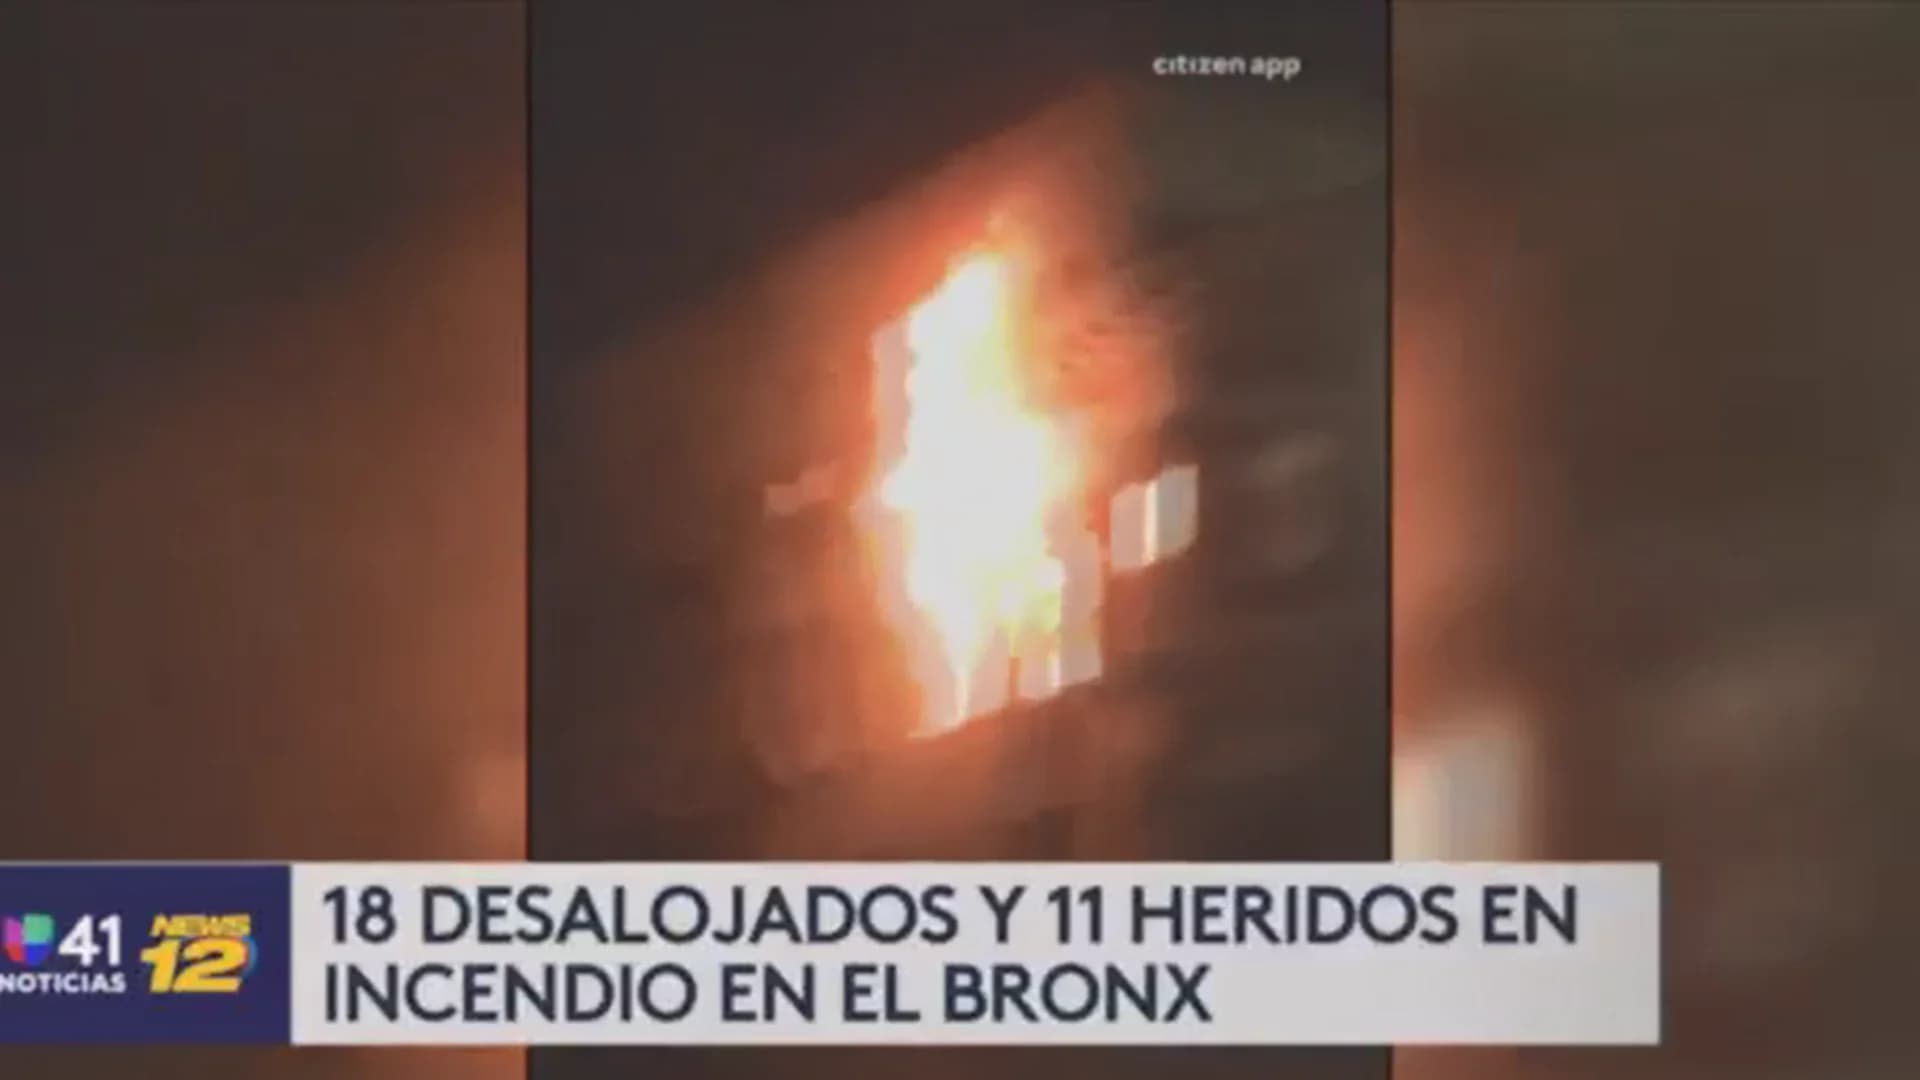 Univision 41 News Brief: 18 personas son desalojadas y once resultan heridos por incendio en El Bronx